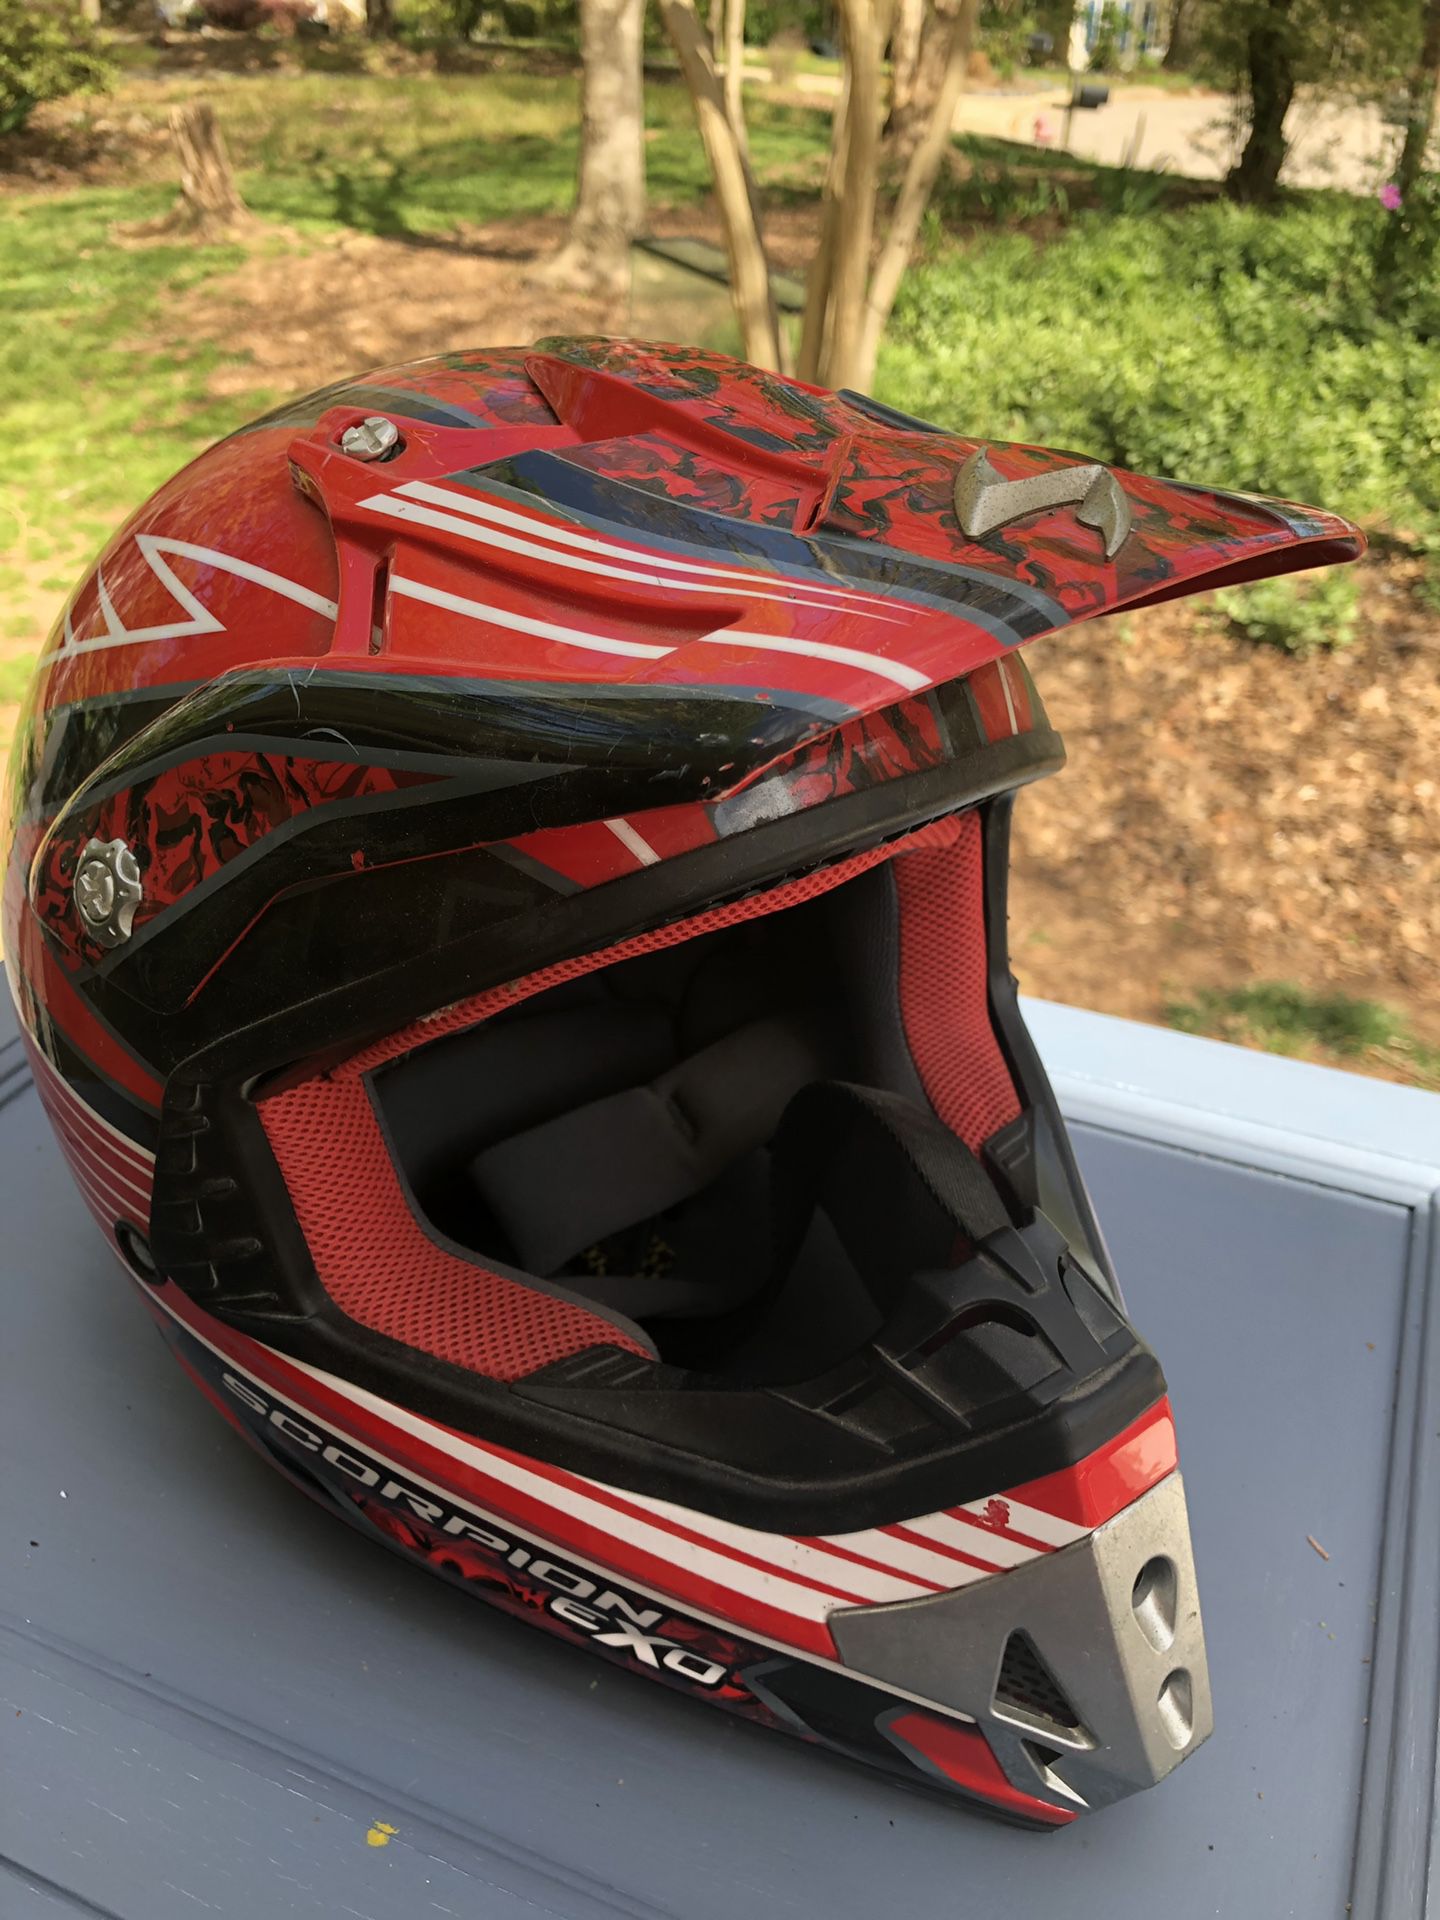 Motorcycle /Dirtbike helmet